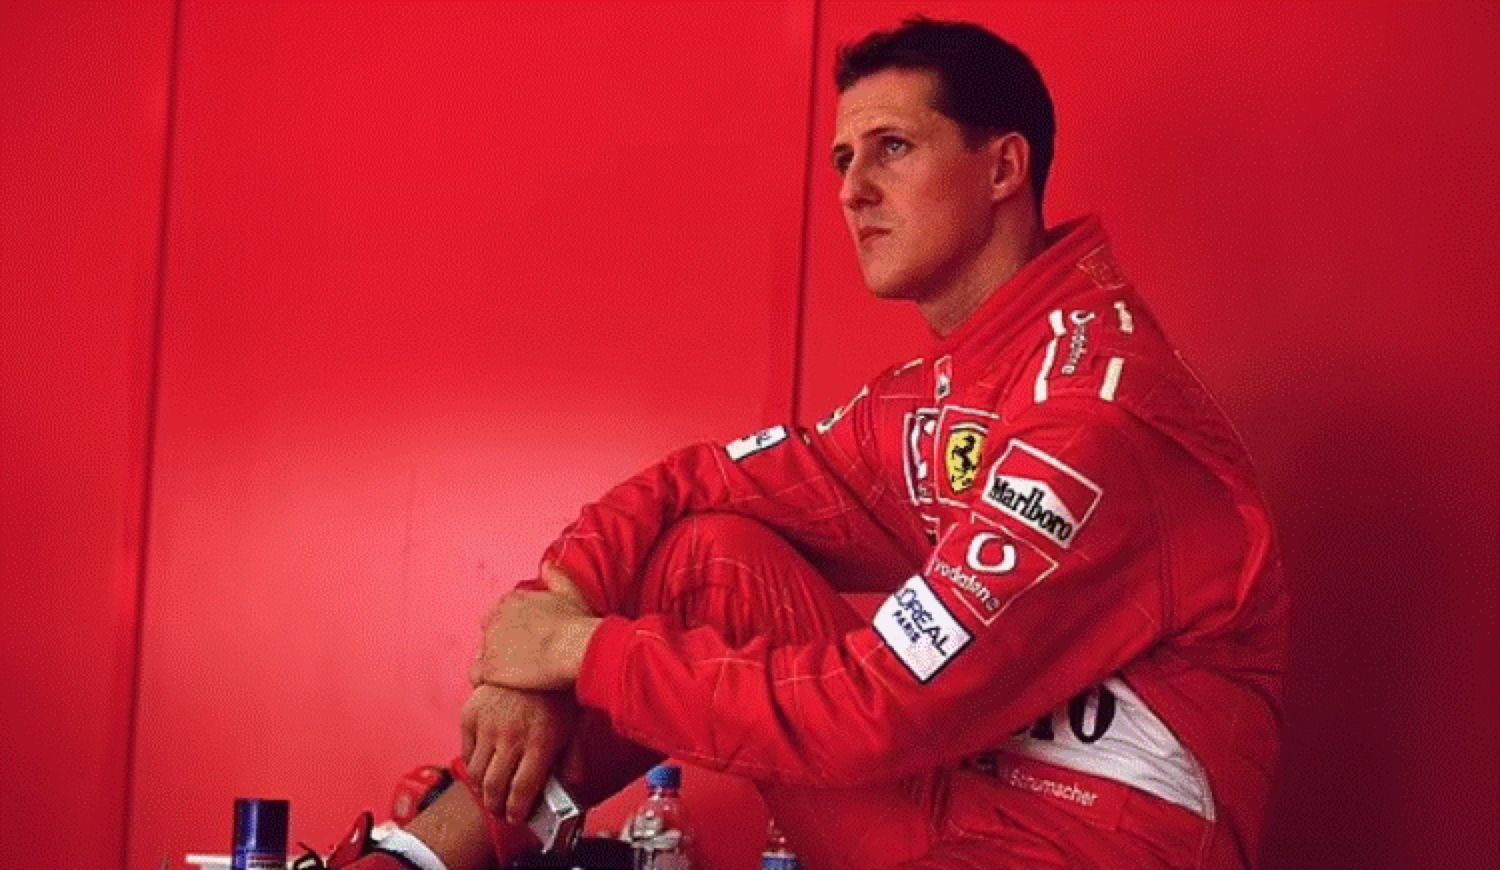 Vești extraordinare despre Michael Schumacher. Ce se întâmplă acum cu legenda Formulei 1